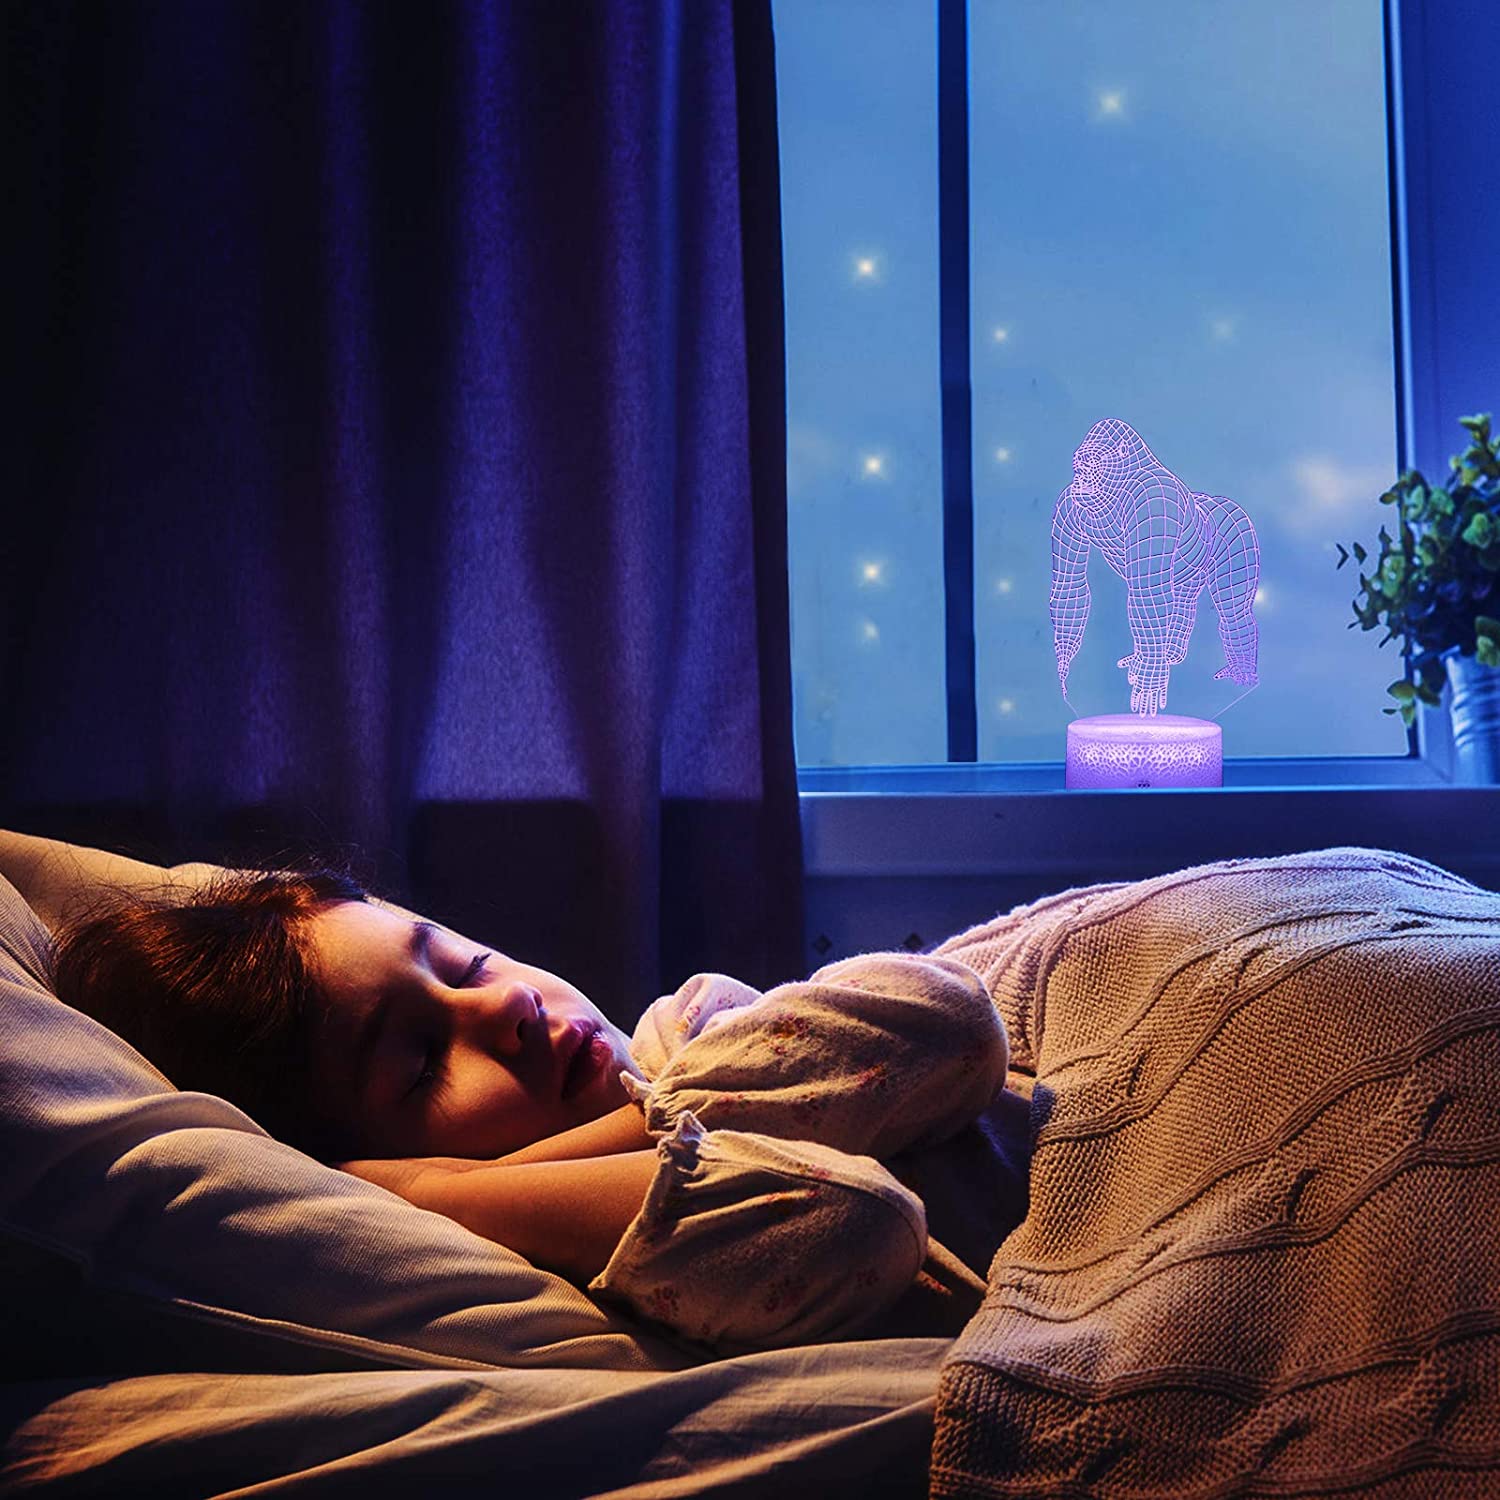 Đèn ngủ giúp con người chìm vào giấc ngủ dễ dàng một cách nhẹ nhàng nhất